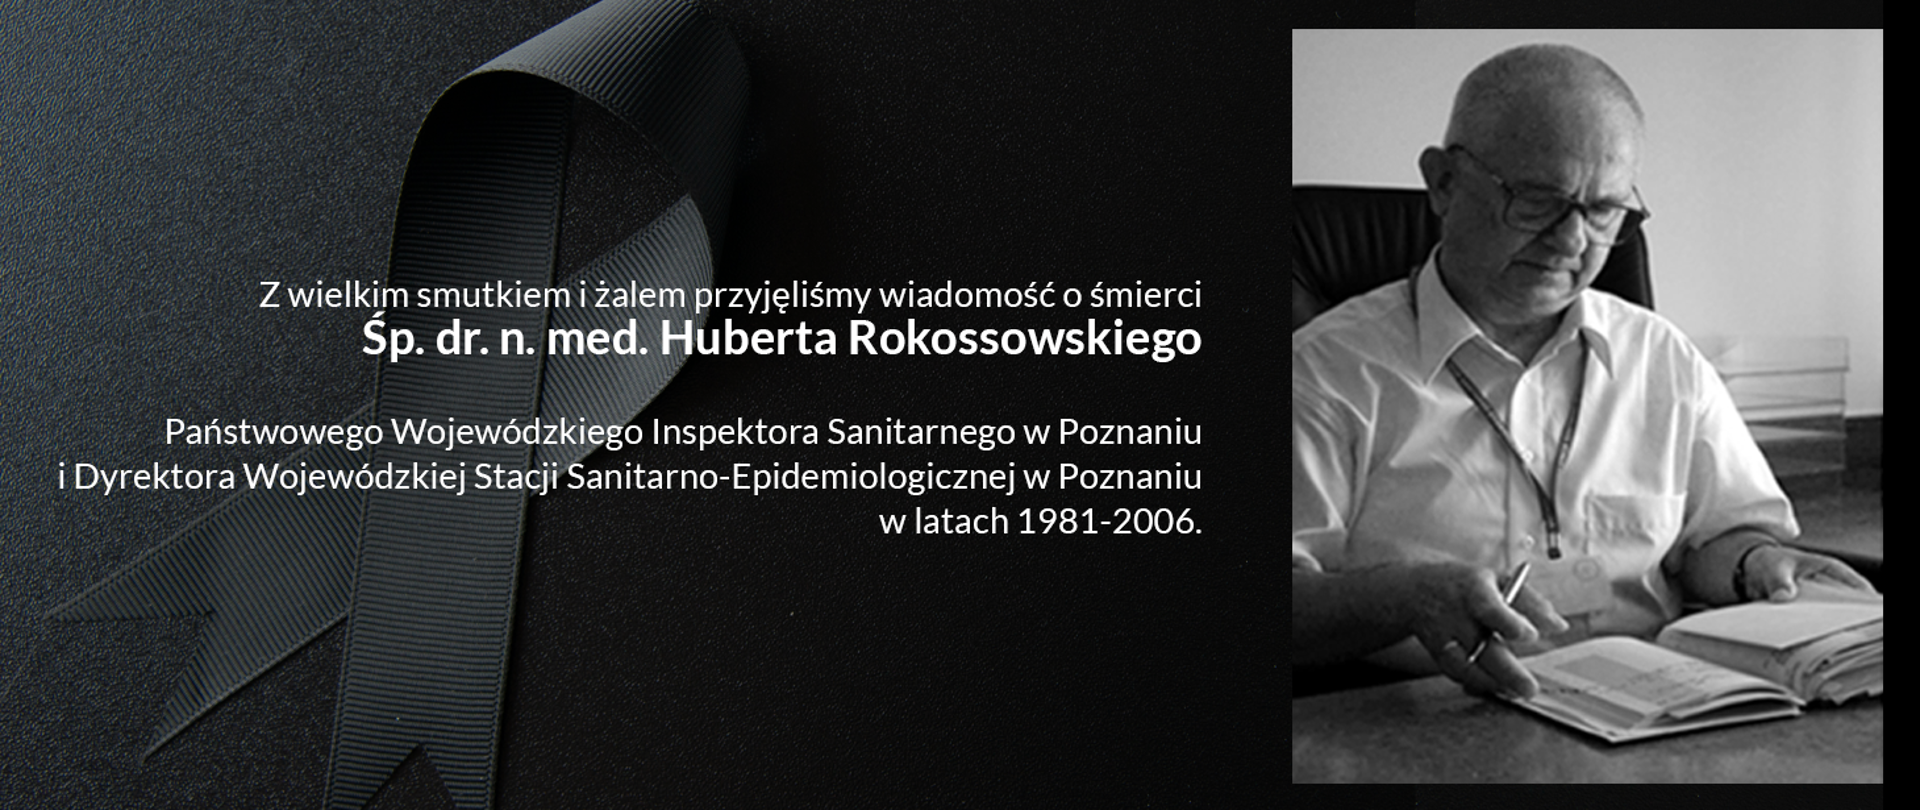 Z wielkim smutkiem i żalem przyjęliśmy wiadomość o śmierci
Śp.
dr. n. med. Huberta Rokossowskiego
Państwowego Wojewódzkiego Inspektora Sanitarnego w Poznaniu i Dyrektora Wojewódzkiej Stacji Sanitarno-Epidemiologicznej w Poznaniu
w latach 1981-2006